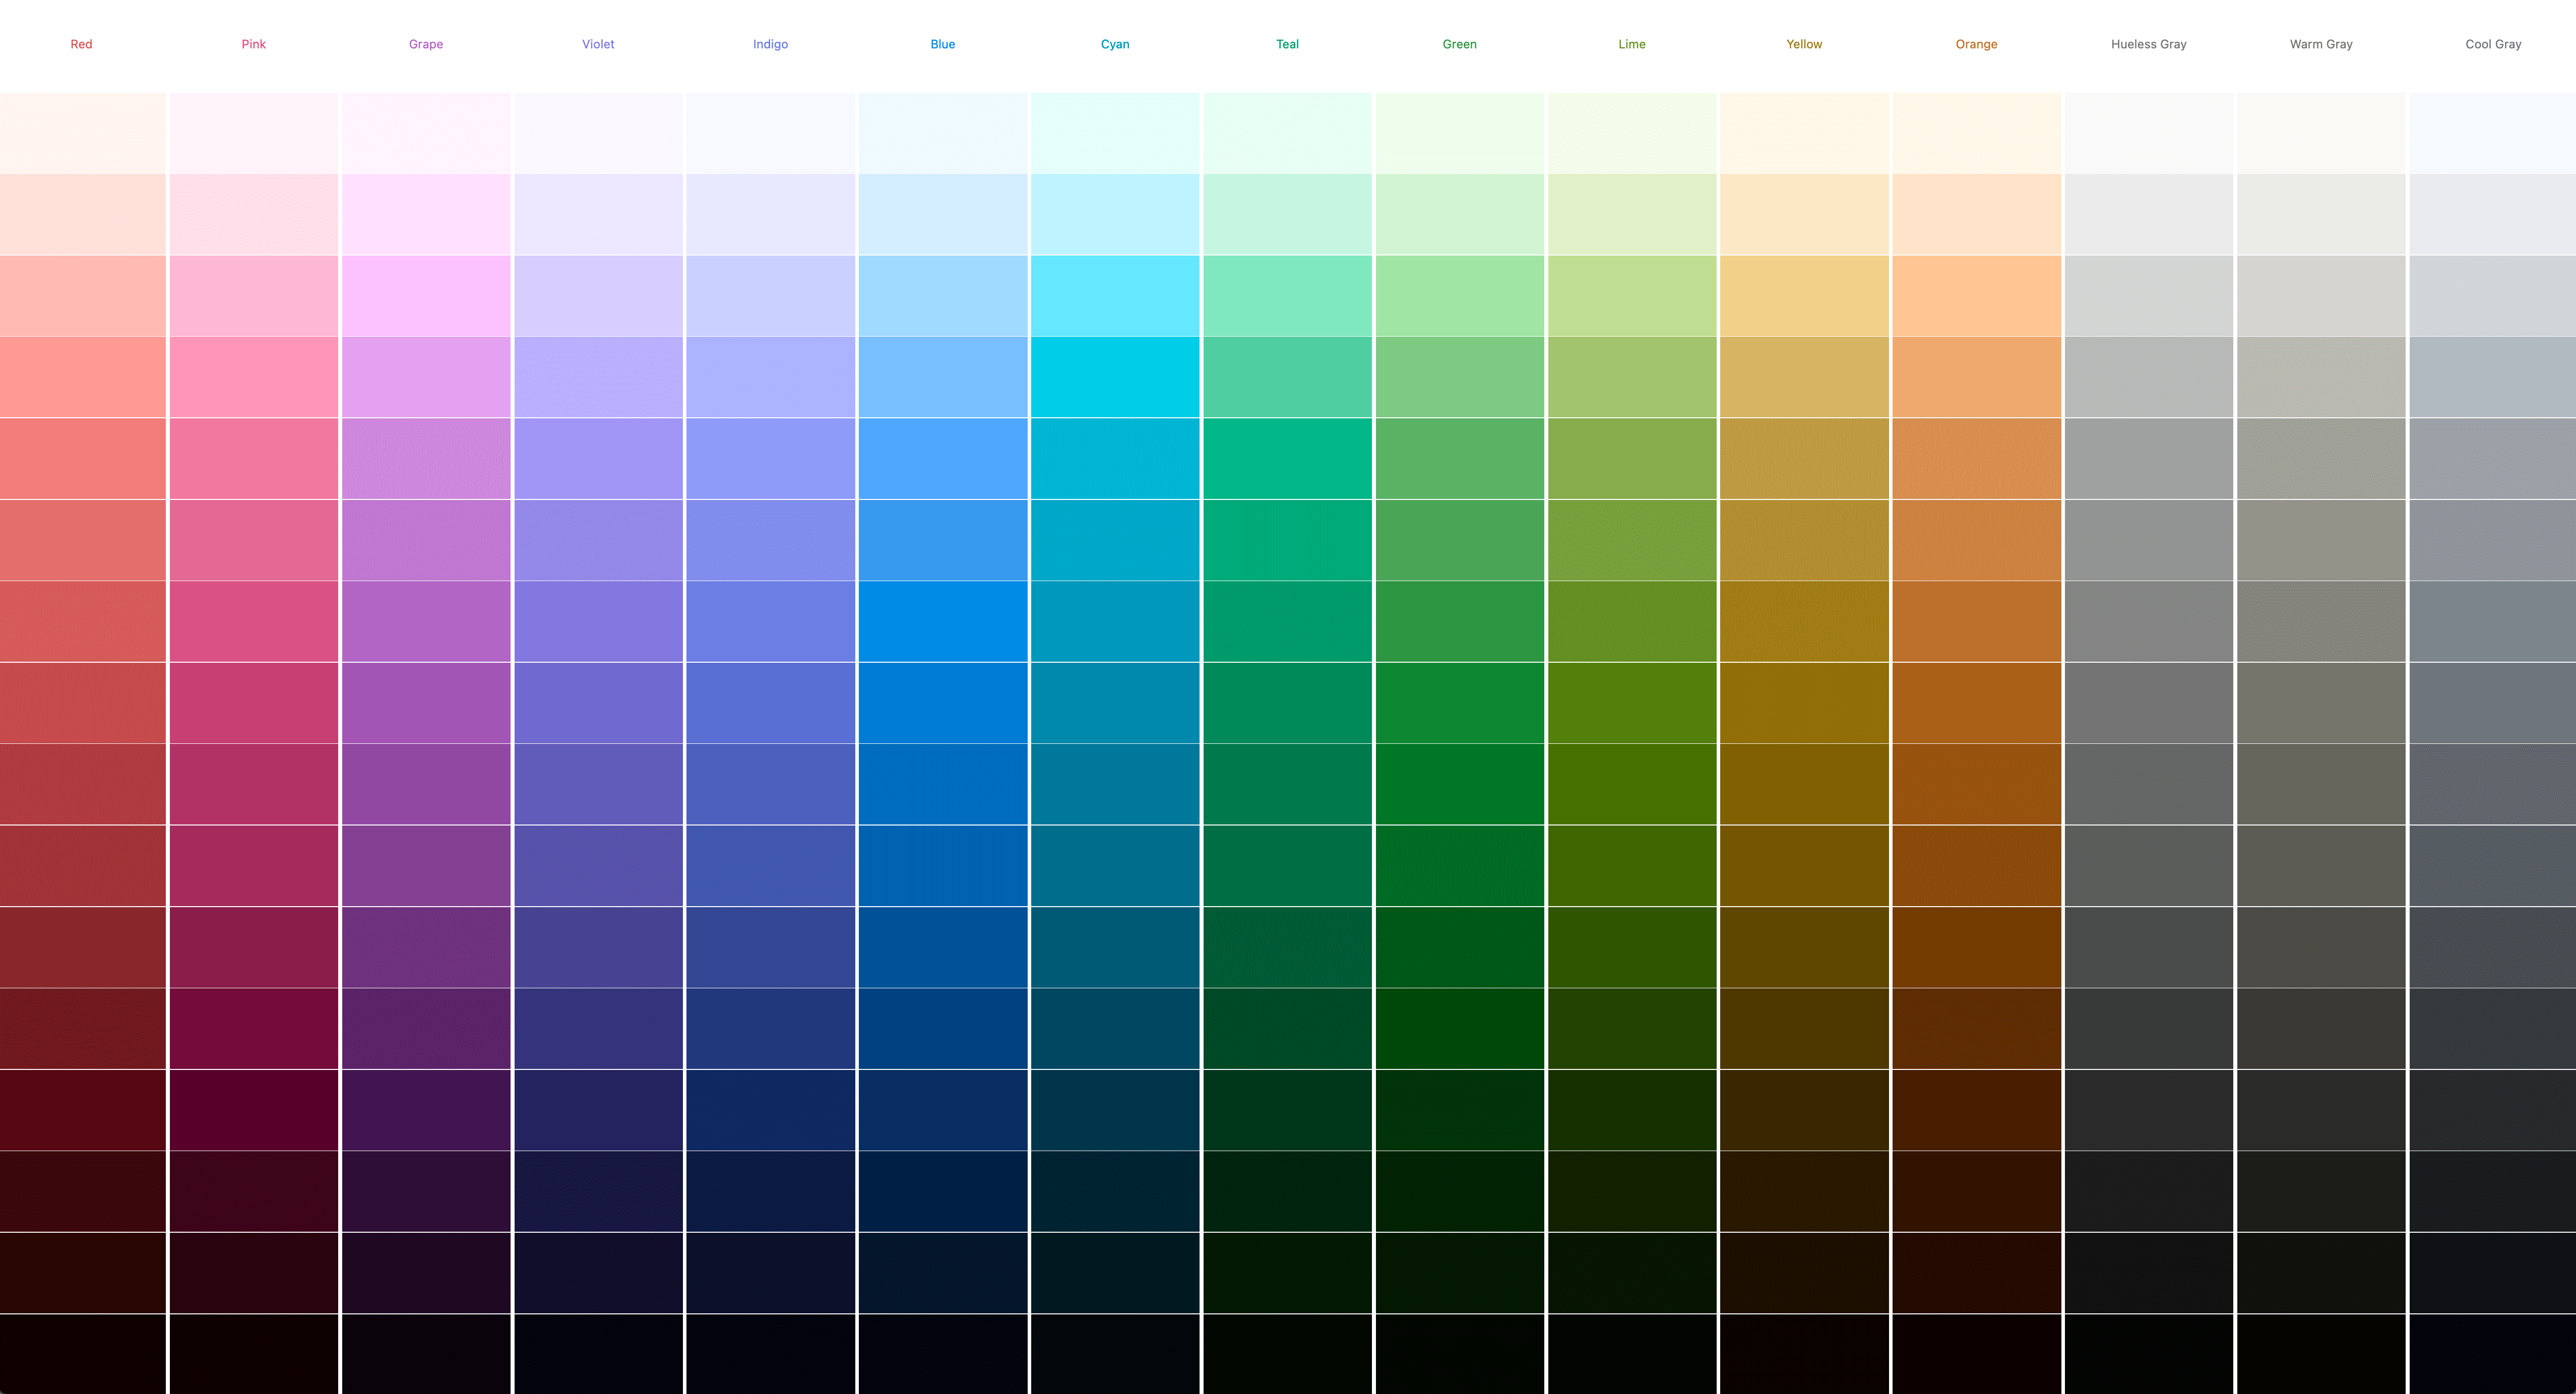 15 个调色板都由 CSS 动态生成的屏幕截图。